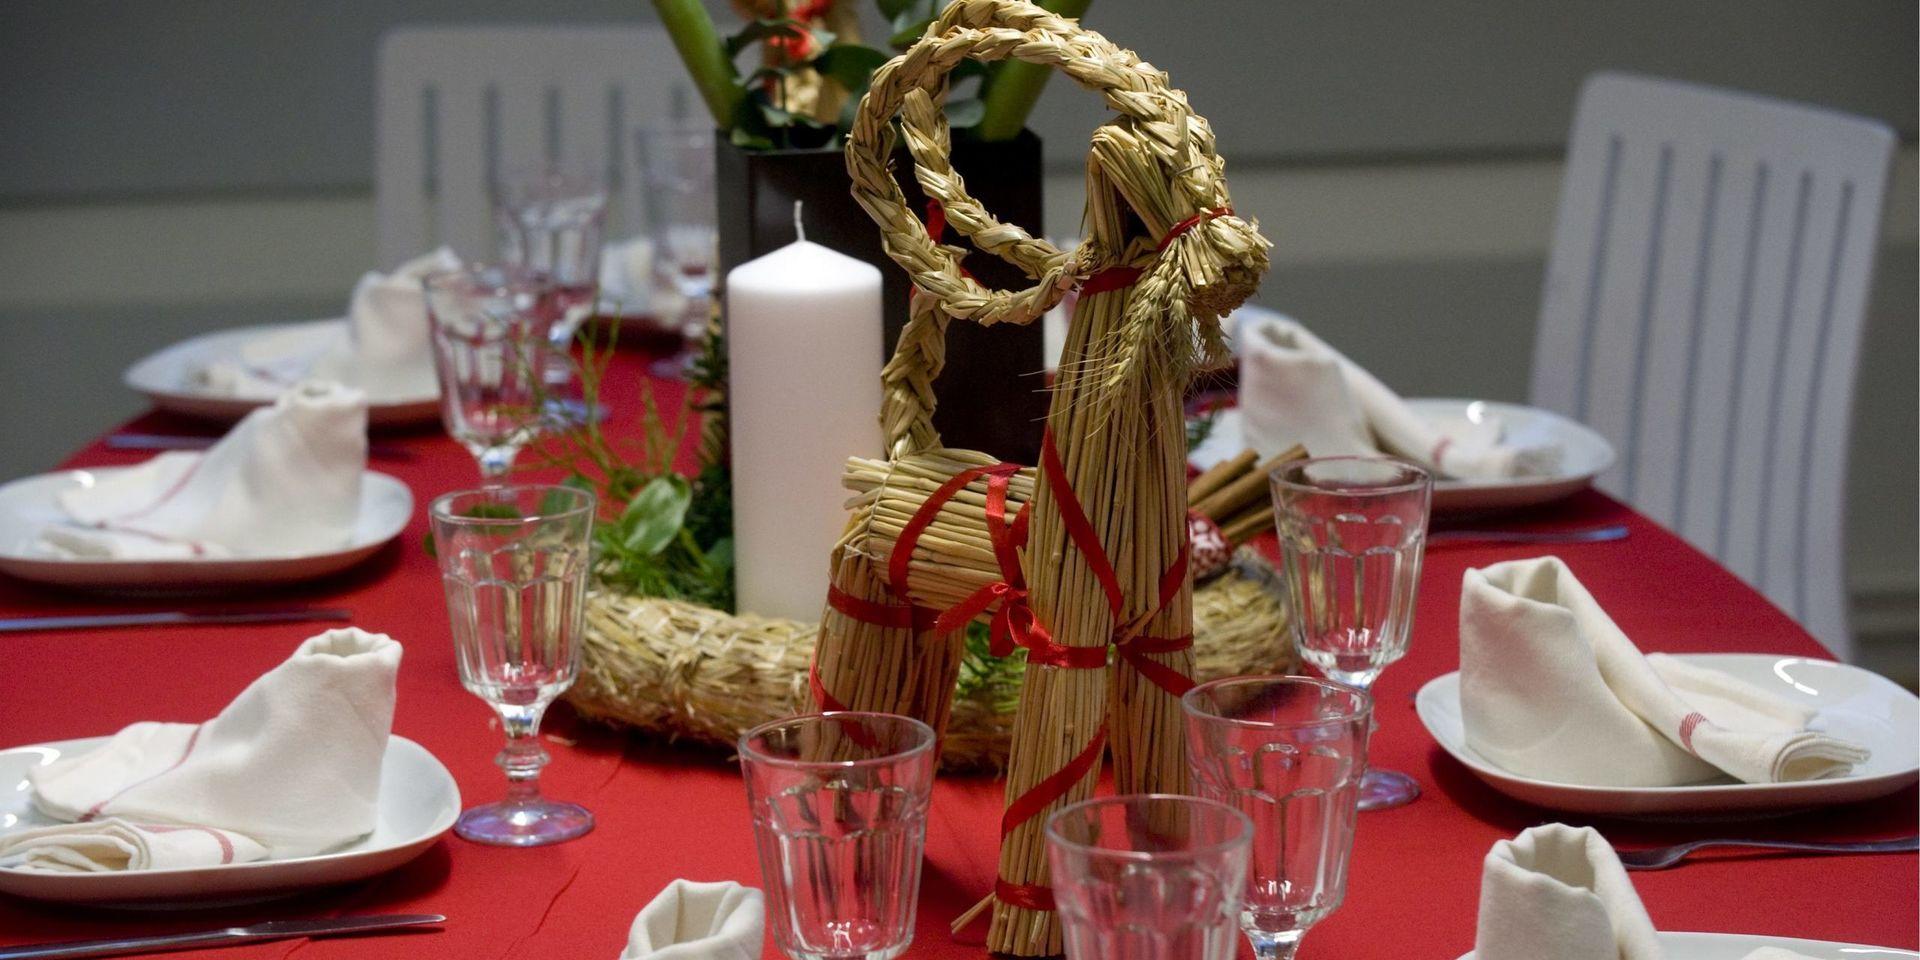 Julfesten är uppskattad av hemtjänsttagarna i Falkenberg. (Bilden är från ett annat julfirande.)